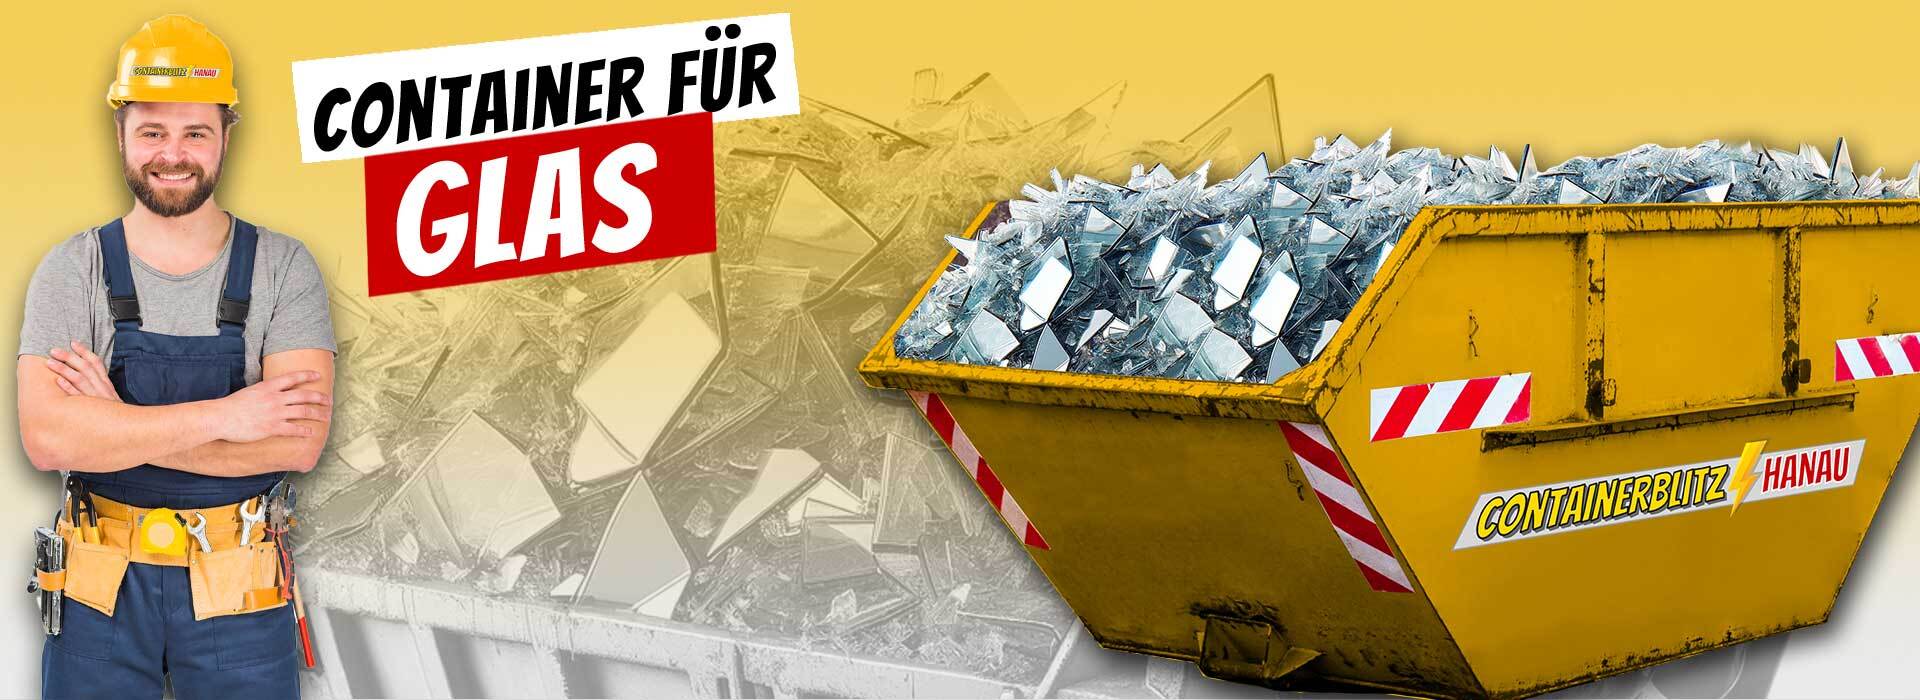 Glasentsorgung leicht gemacht in Hanau: Mieten Sie unseren Containerdienst